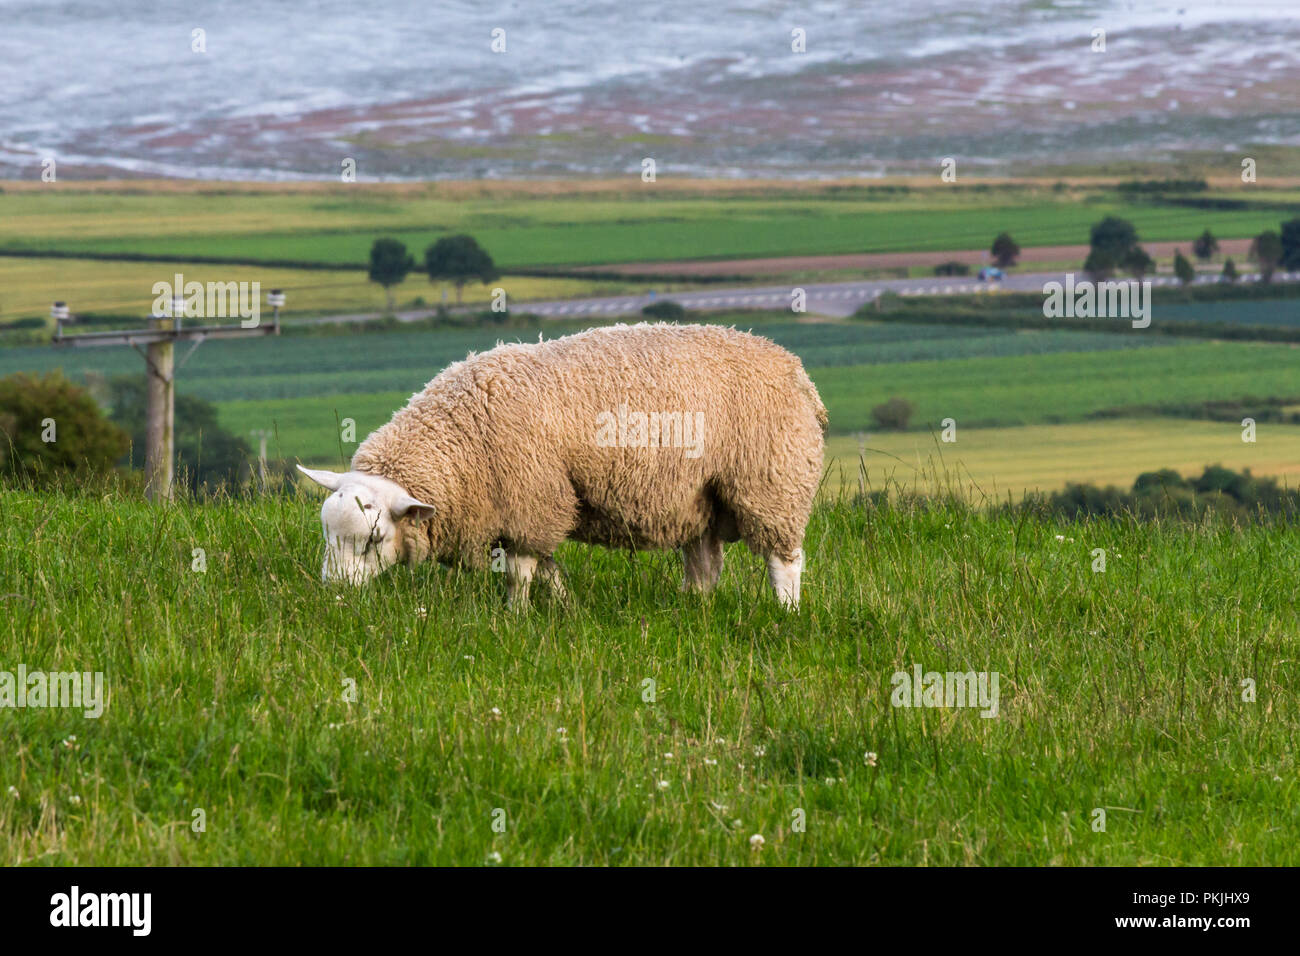 Le pâturage des moutons laineux sur une colline au-dessus de Strangford Lough. Newtownards, comté de Down, Irlande du Nord. Banque D'Images